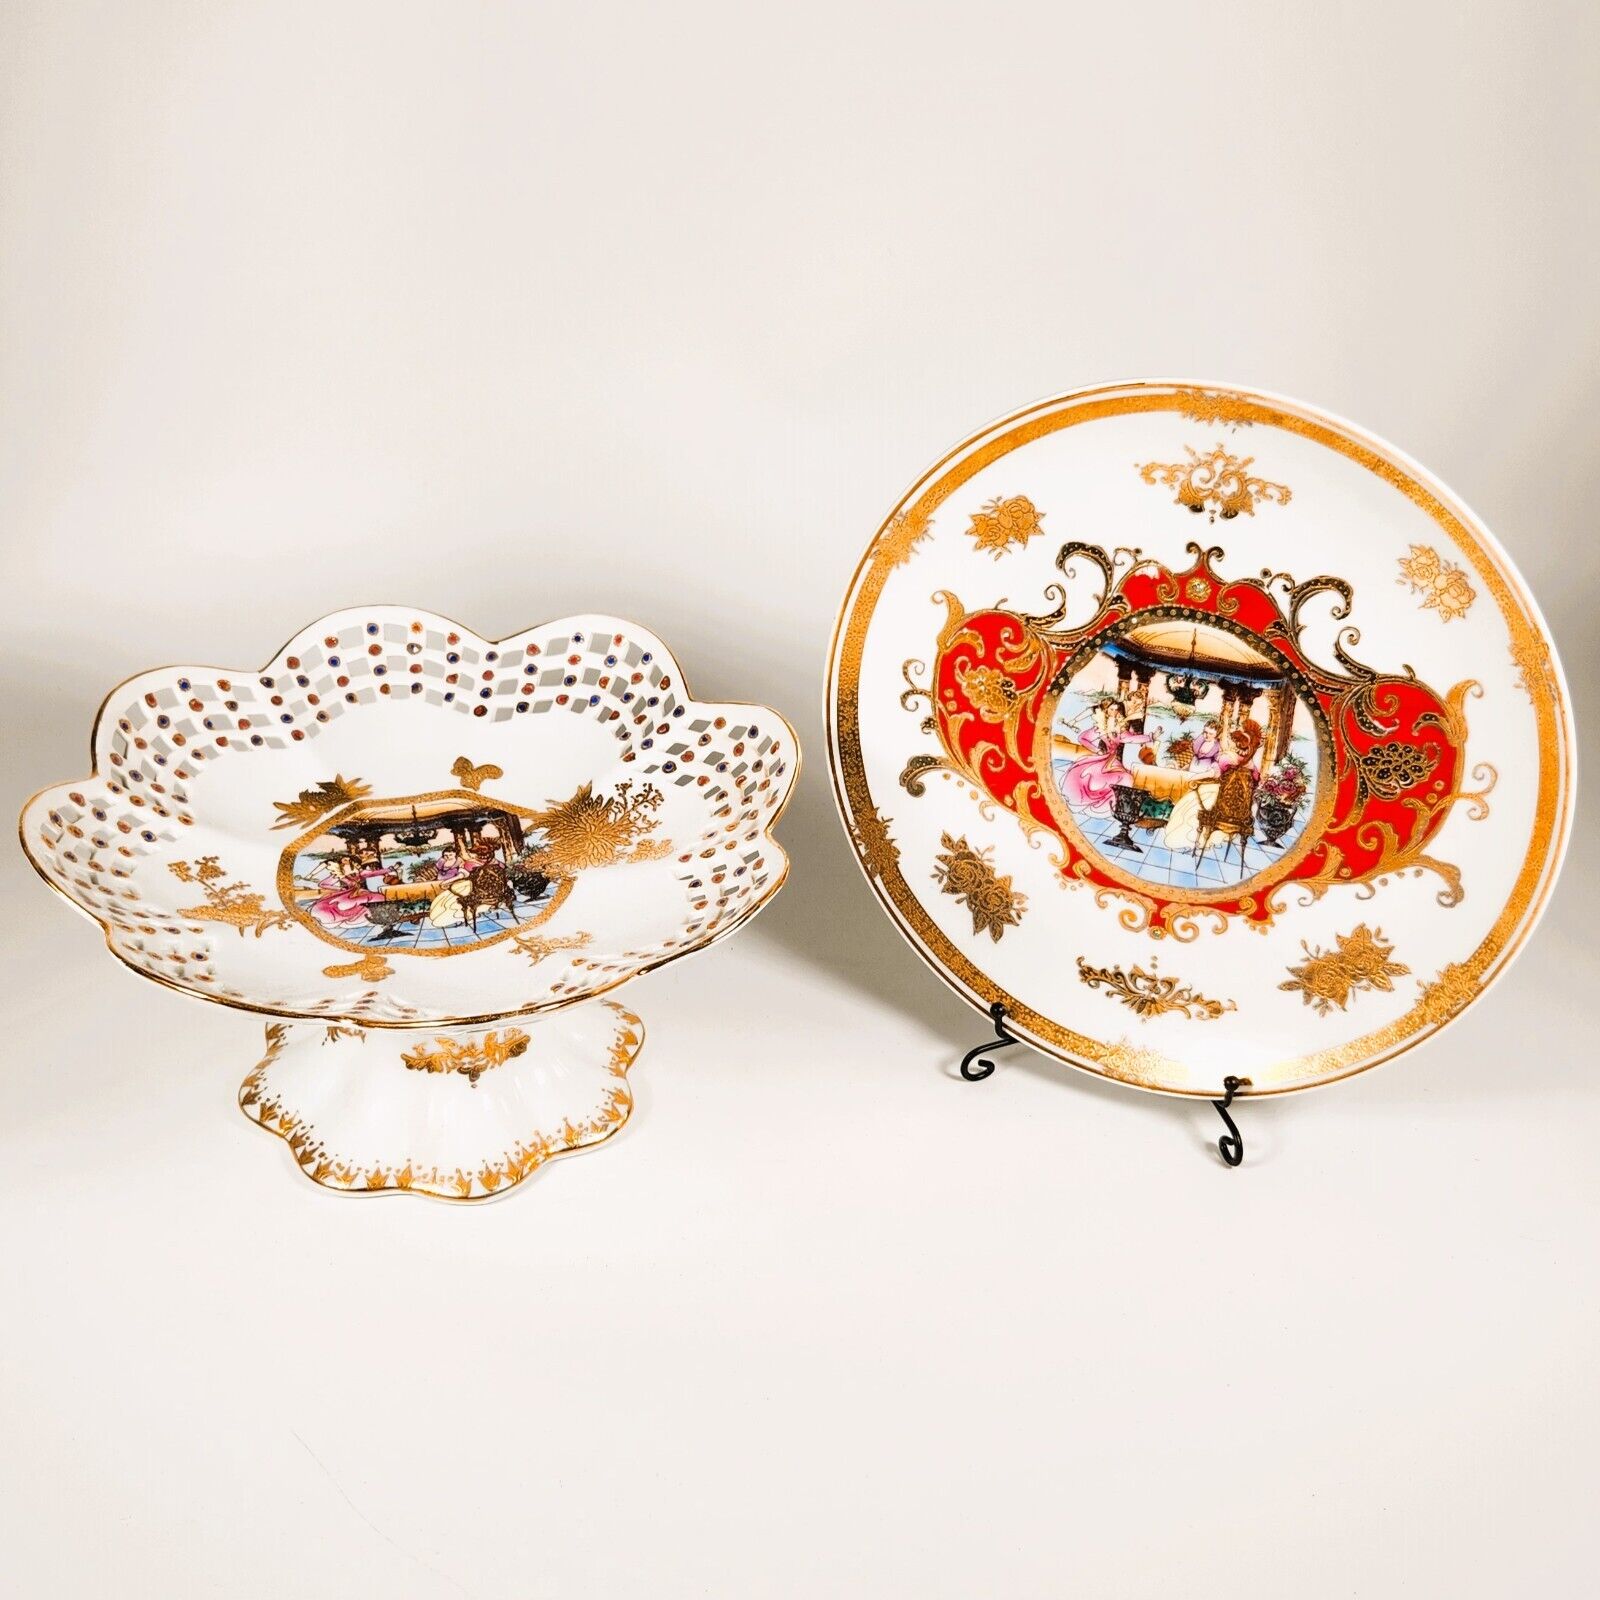 Vintage L.F. Fine Porcelain Limoges Plates & Compote Set - Elegant Gold Trim